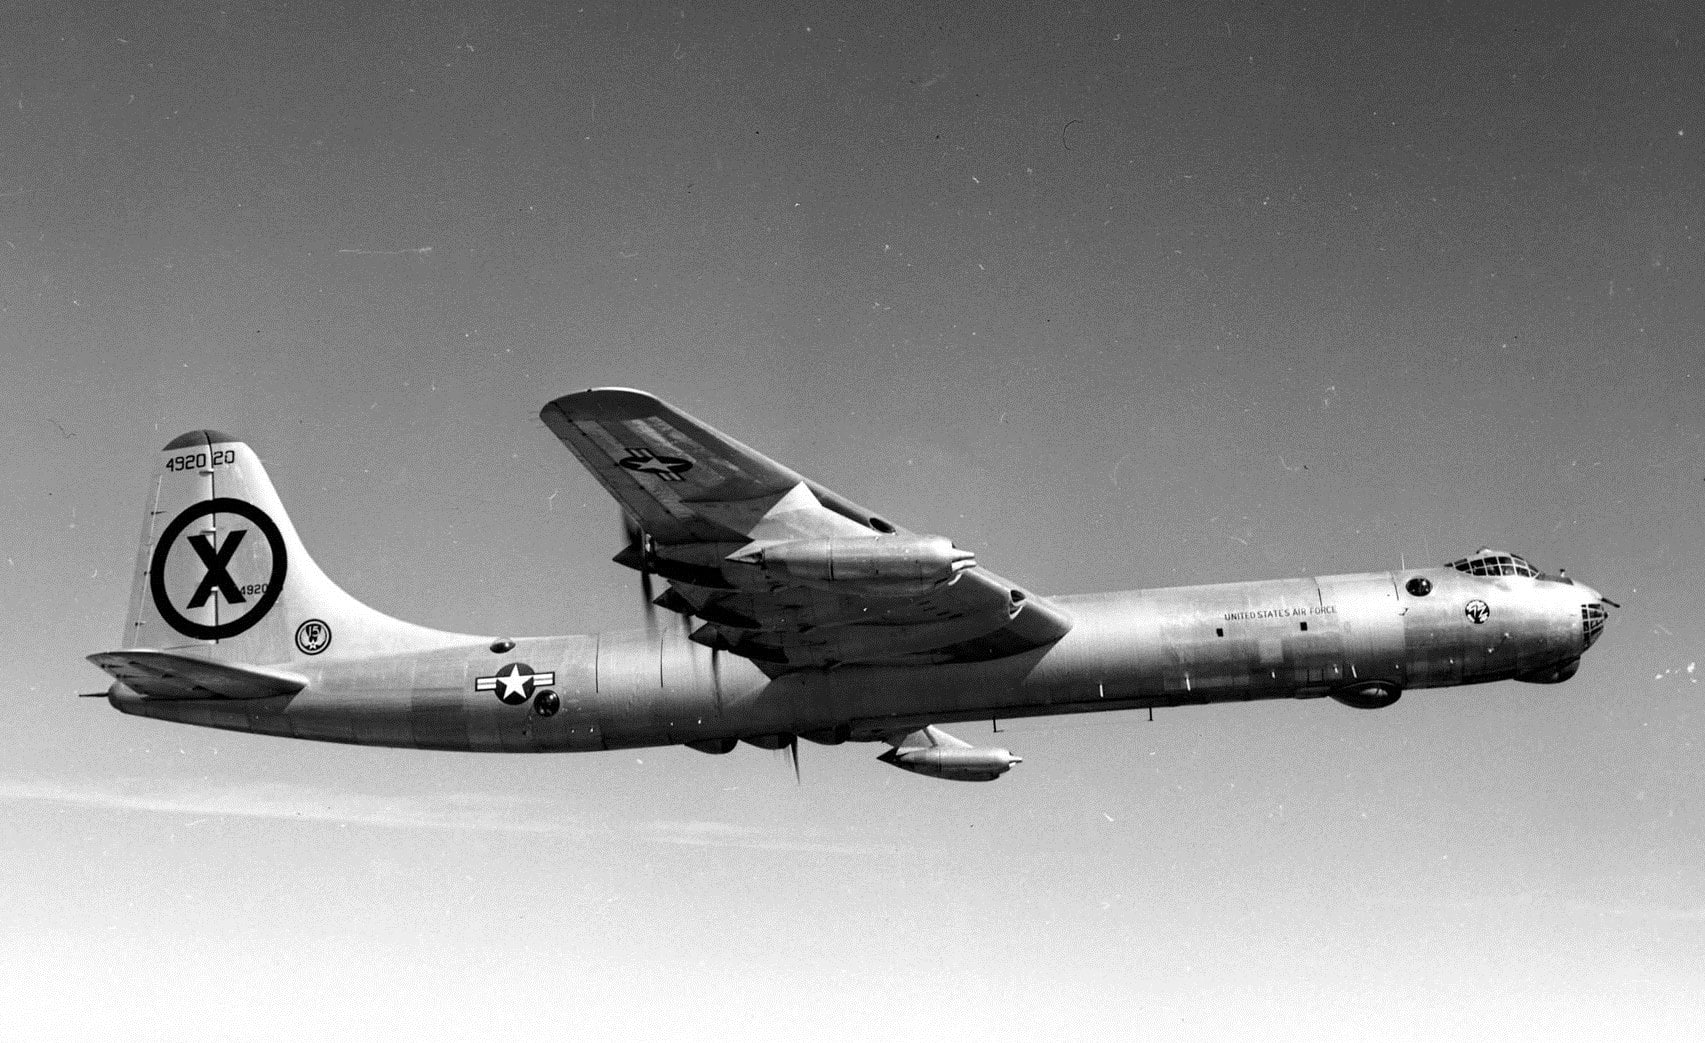 RB-36D in flight.